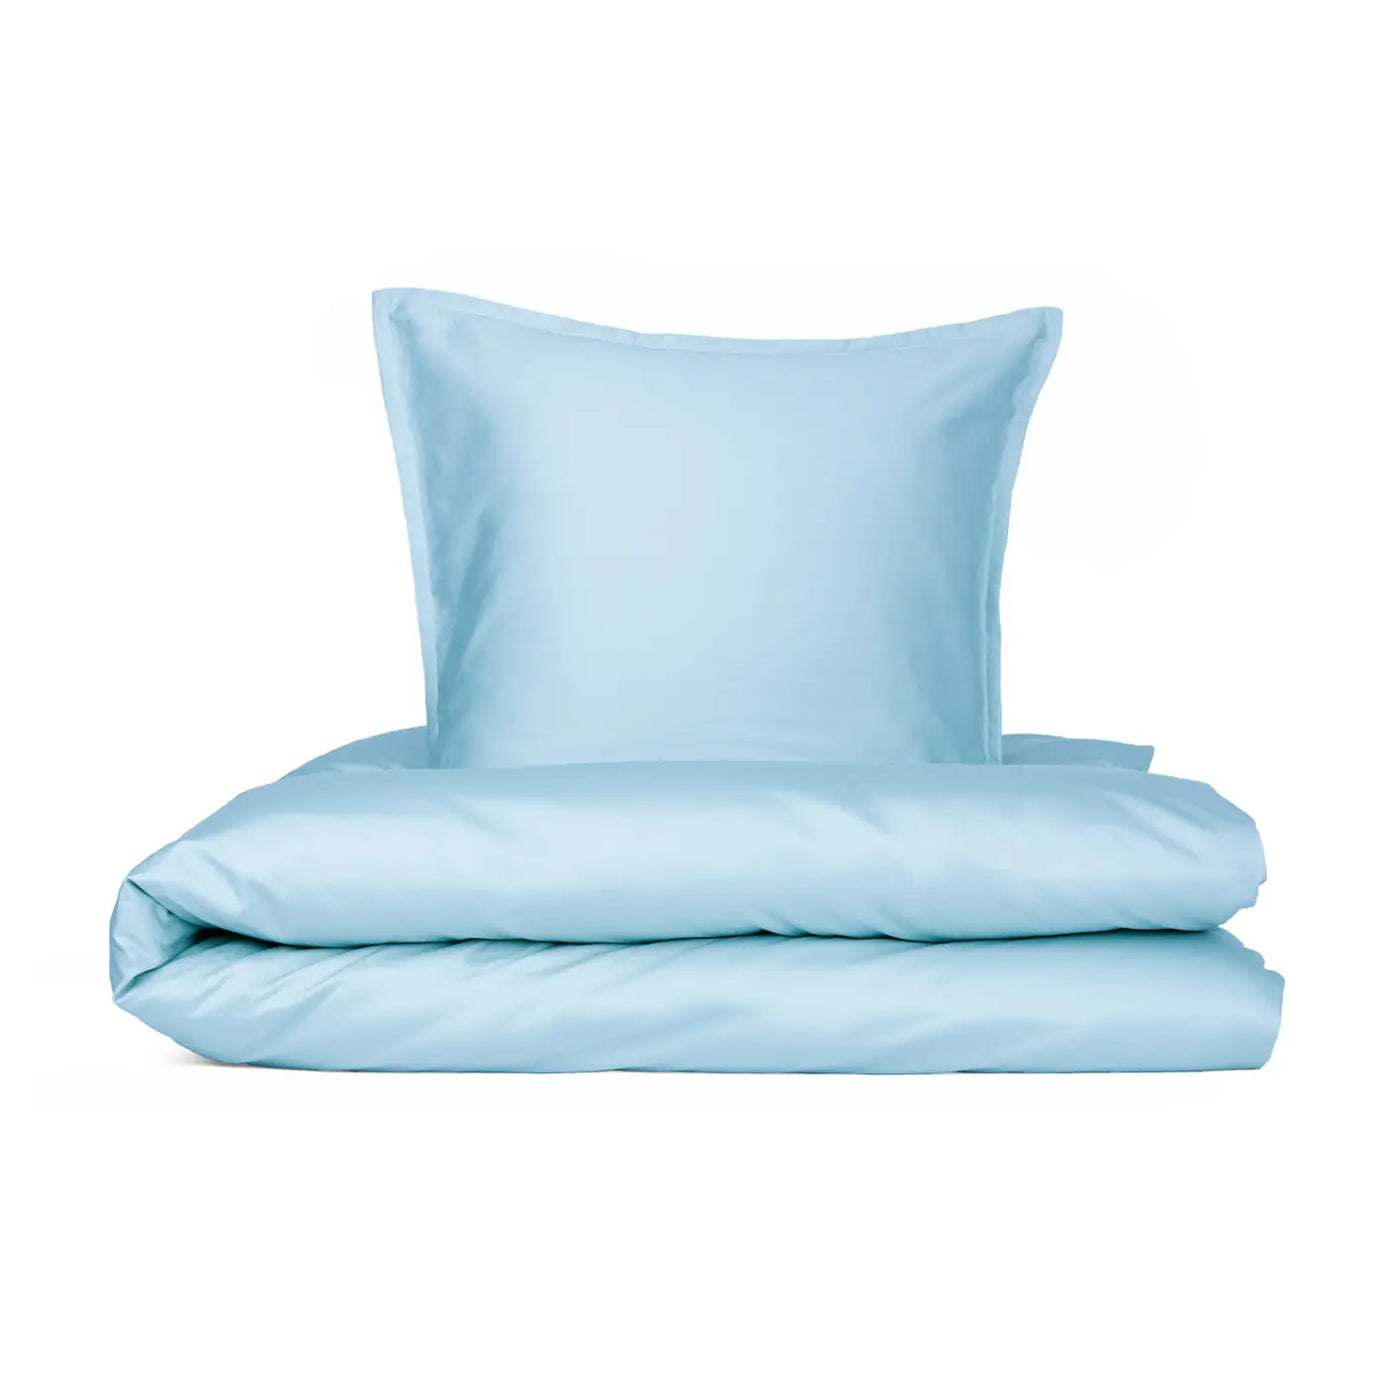 Produktbillede af dobbelt sengetøj egyptisk bomuld lys blå 